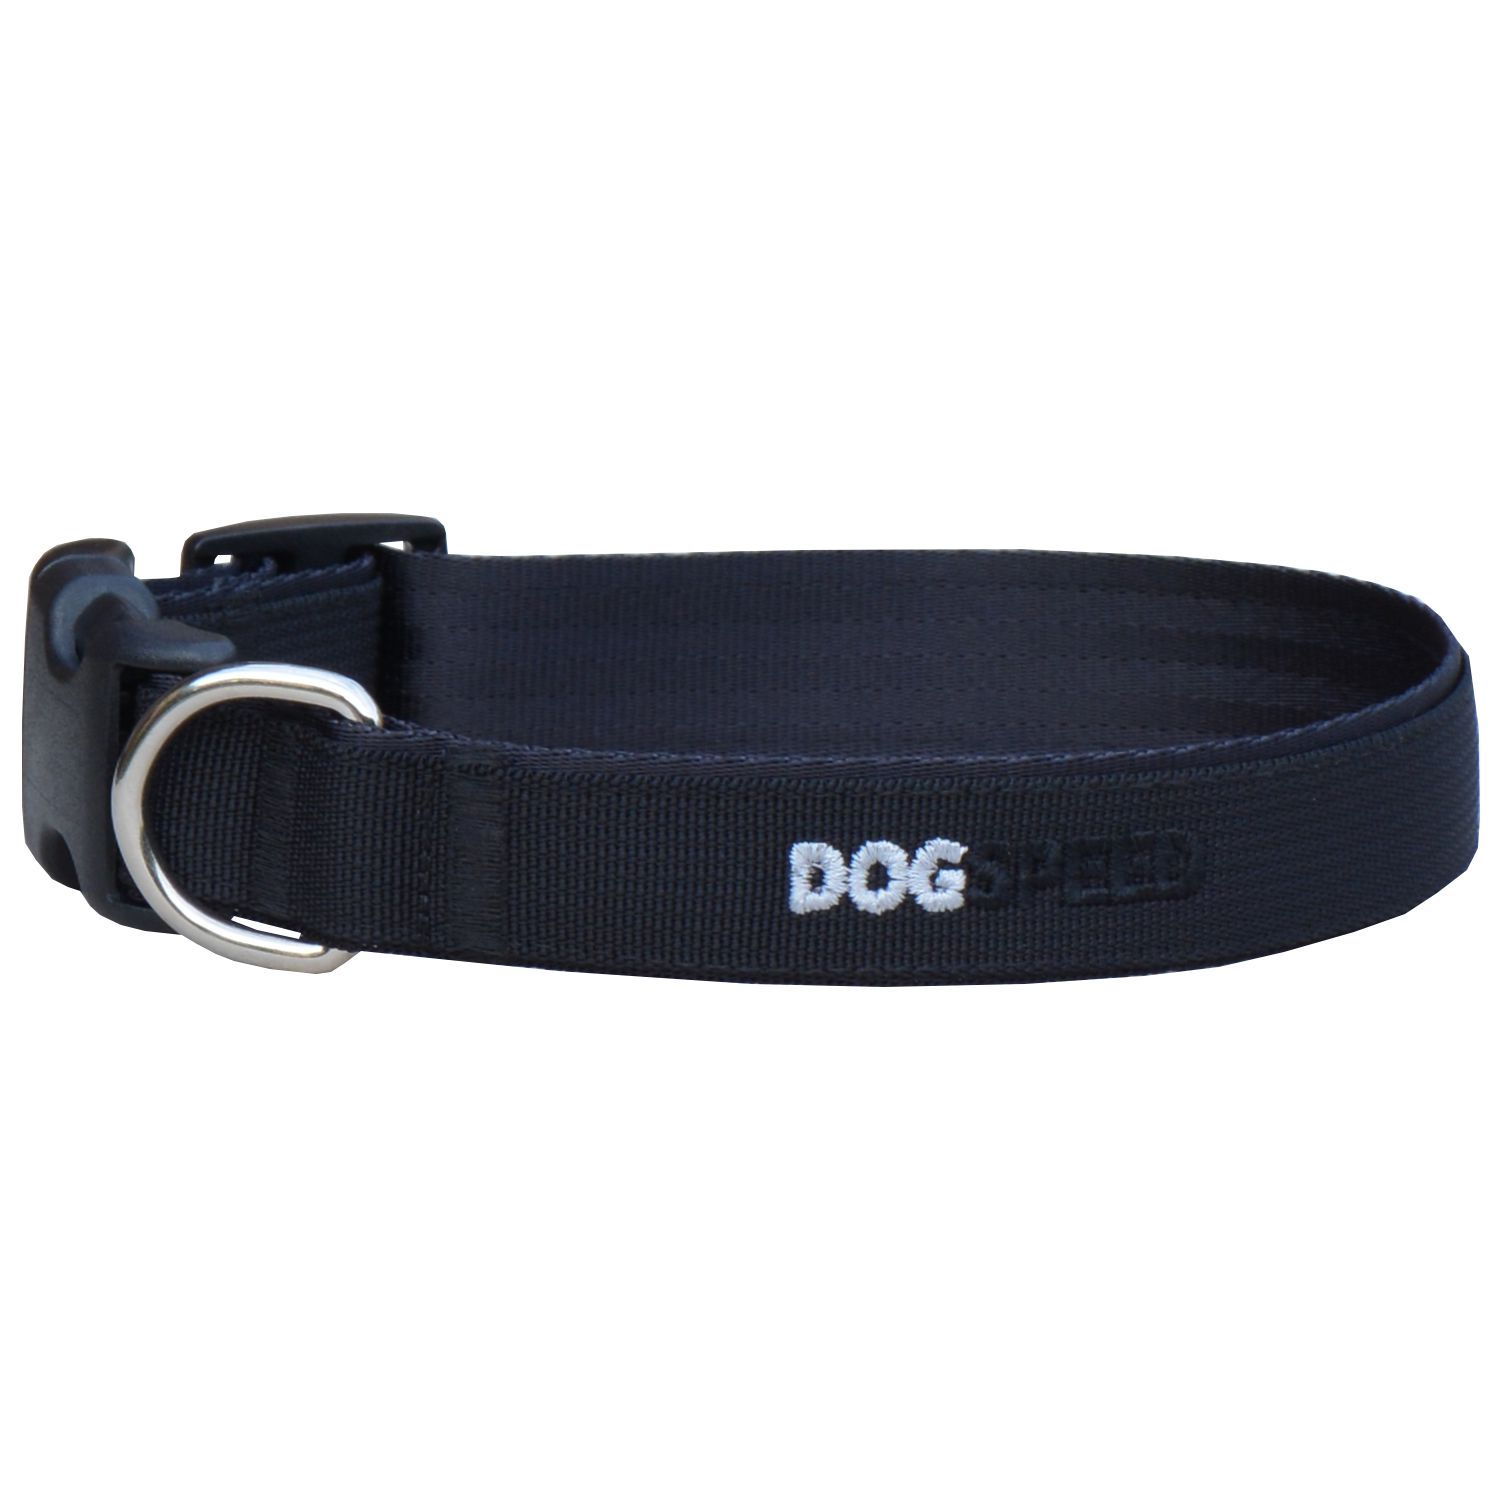 Obroża dla psa czarno-czarna, możliwy haft np. imię psa, szer. 2,5cm 